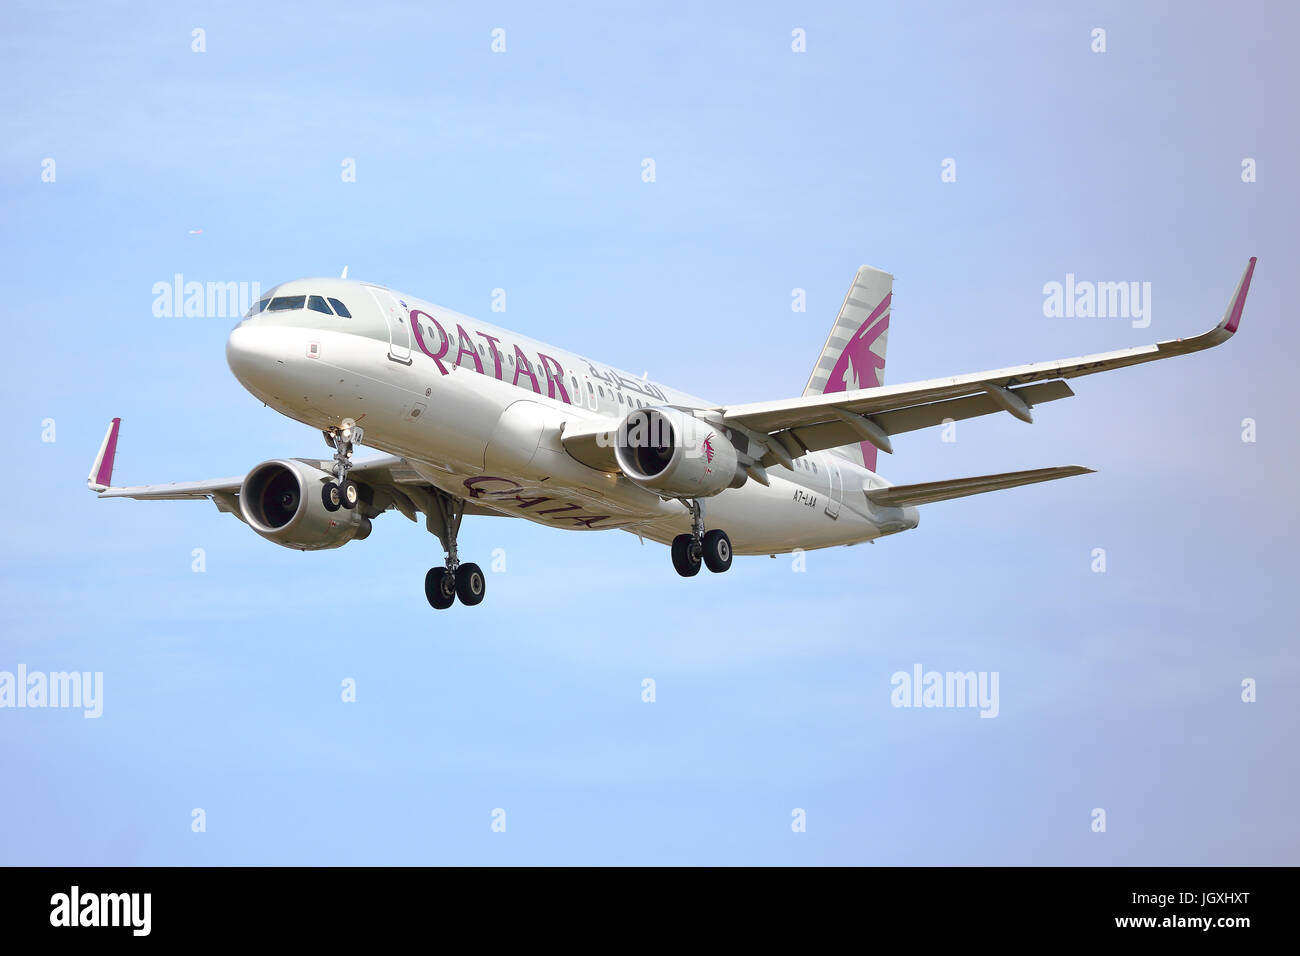 Qatar Airways Airbus A320-214(WL) a7-laa atterraggio all' aeroporto di Heathrow, Regno Unito Foto Stock